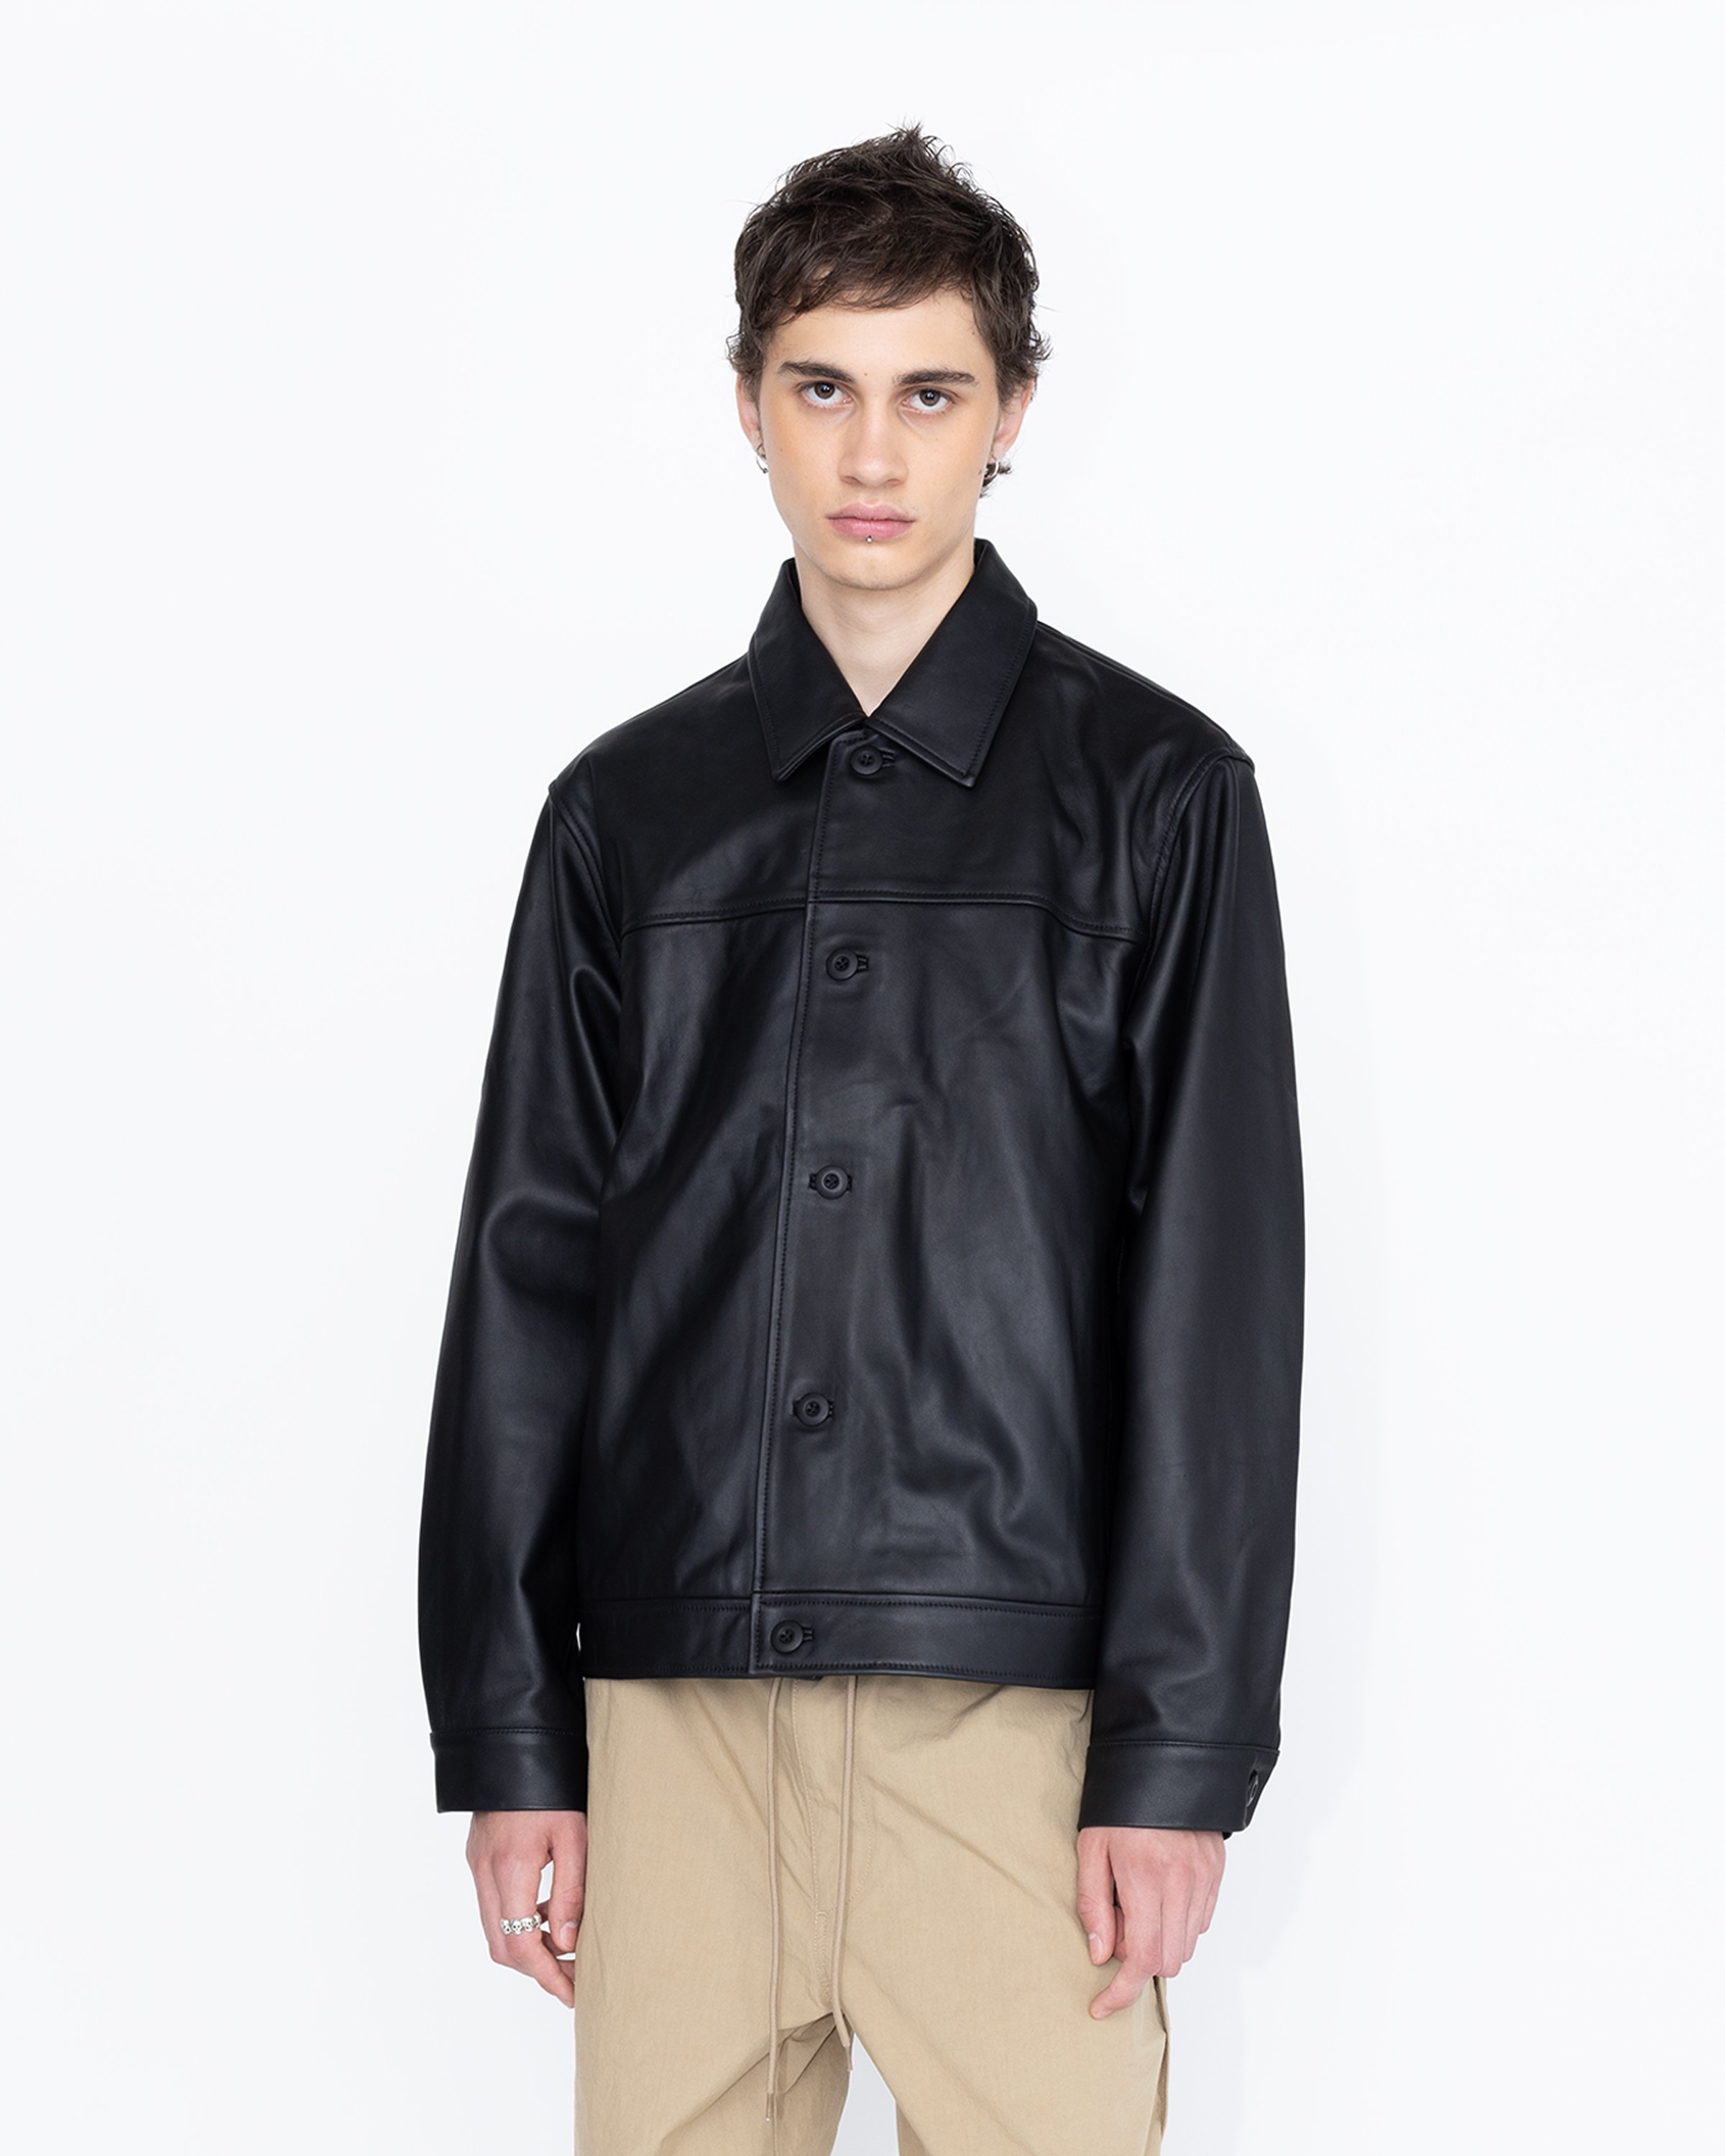 Highsnobiety HS05 - Leather Jacket Black - Clothing - Black - Image 3